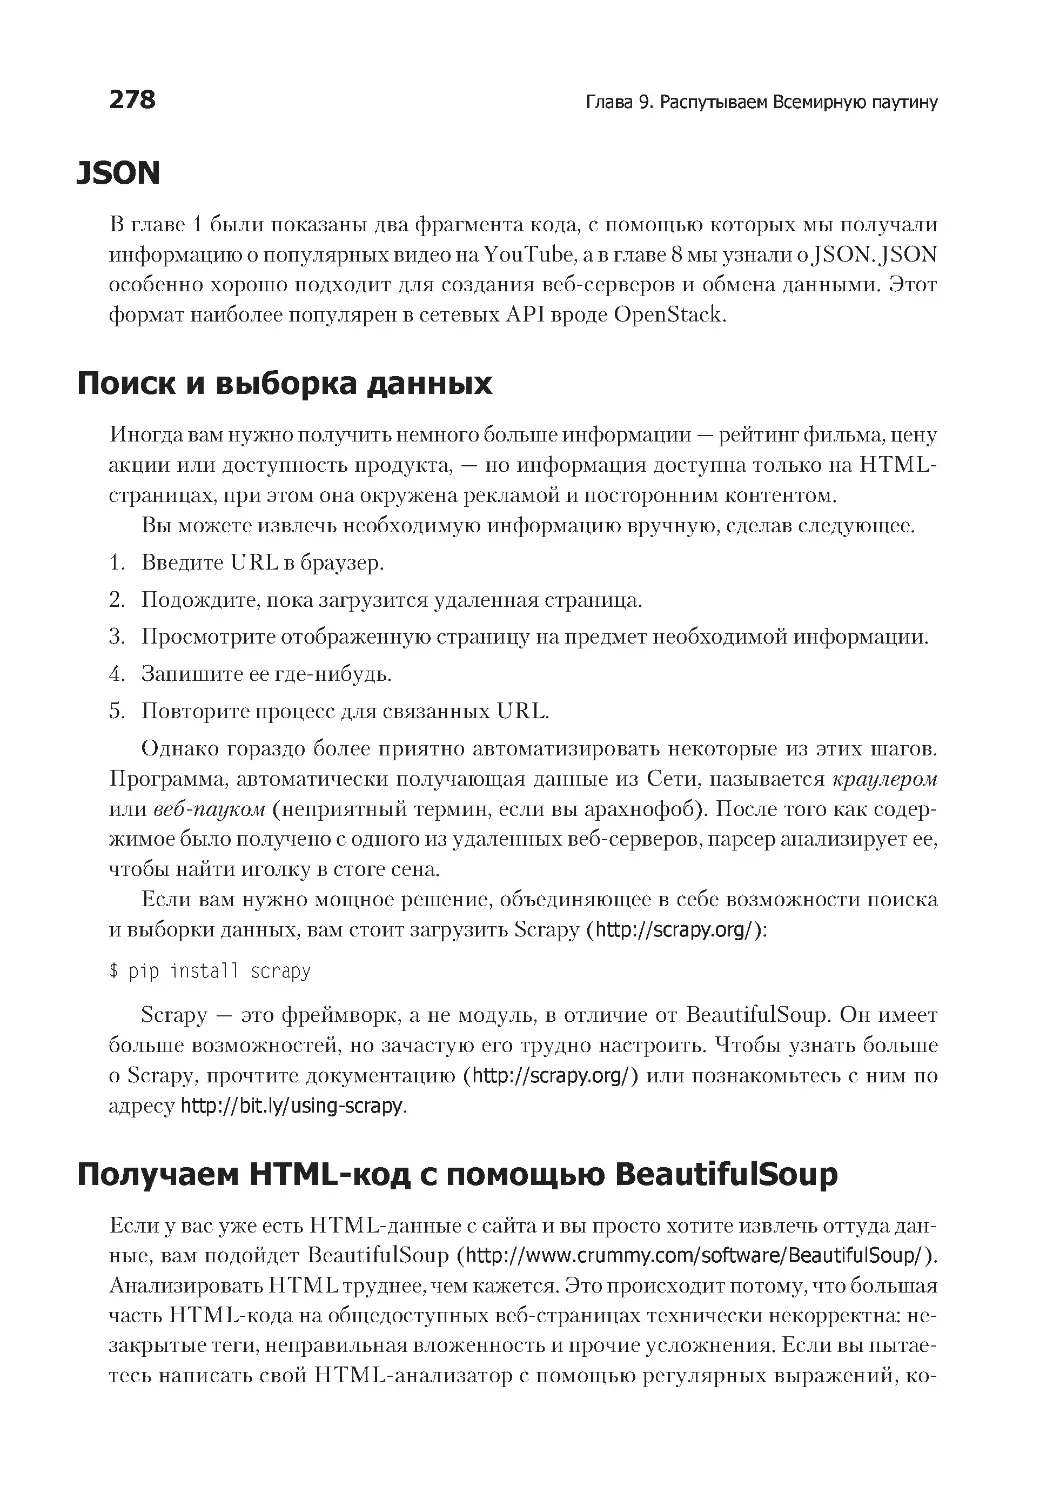 JSON
Поиск и выборка данных
Получаем HTML-код с помощью BeautifulSoup